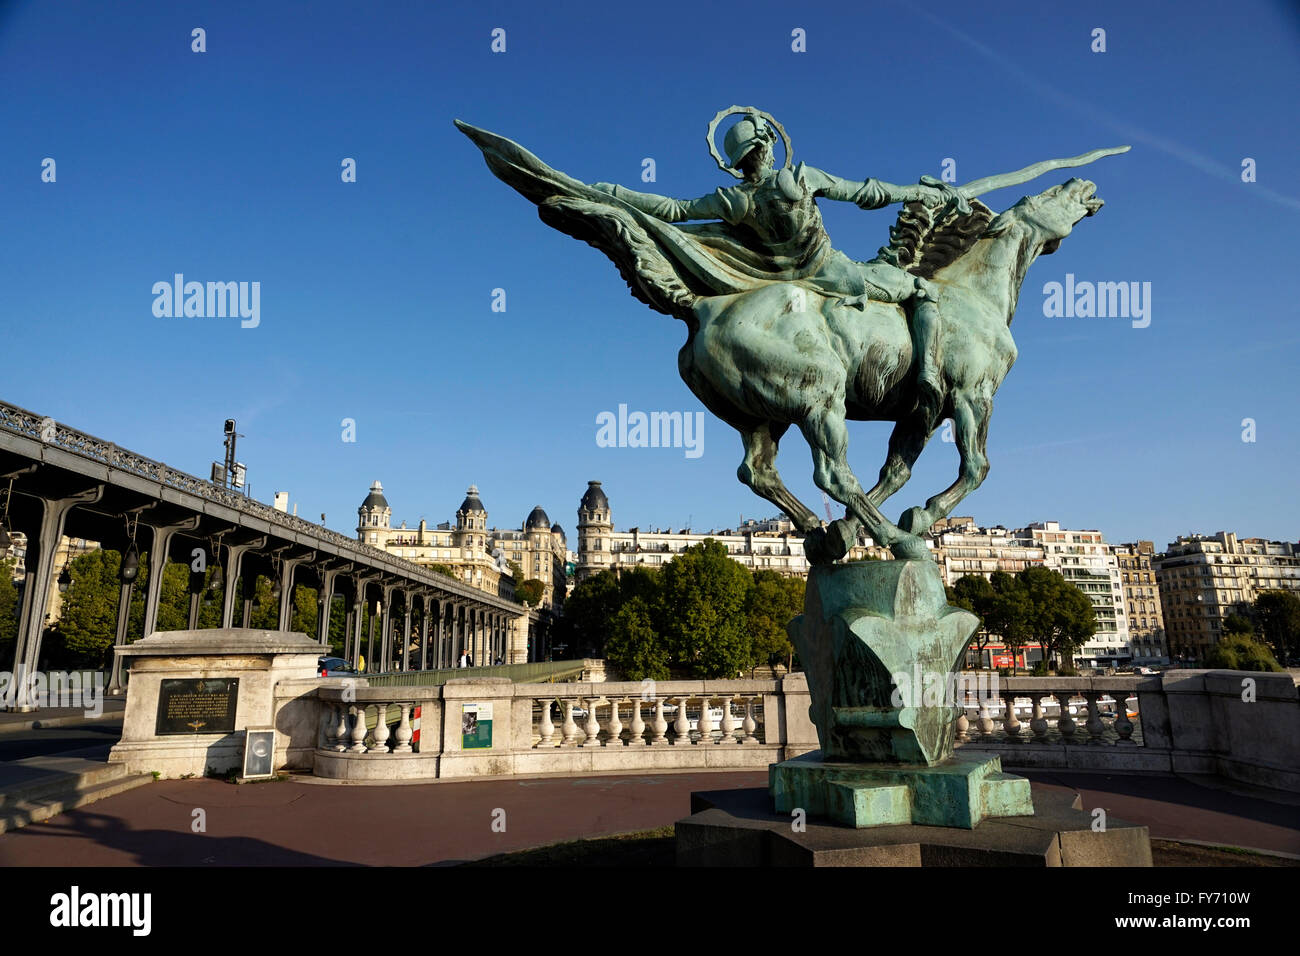 The statue of La Fance Renaissante by Holger Wederkinch by the Pont Bir Hakeim bridge, Paris, France Stock Photo